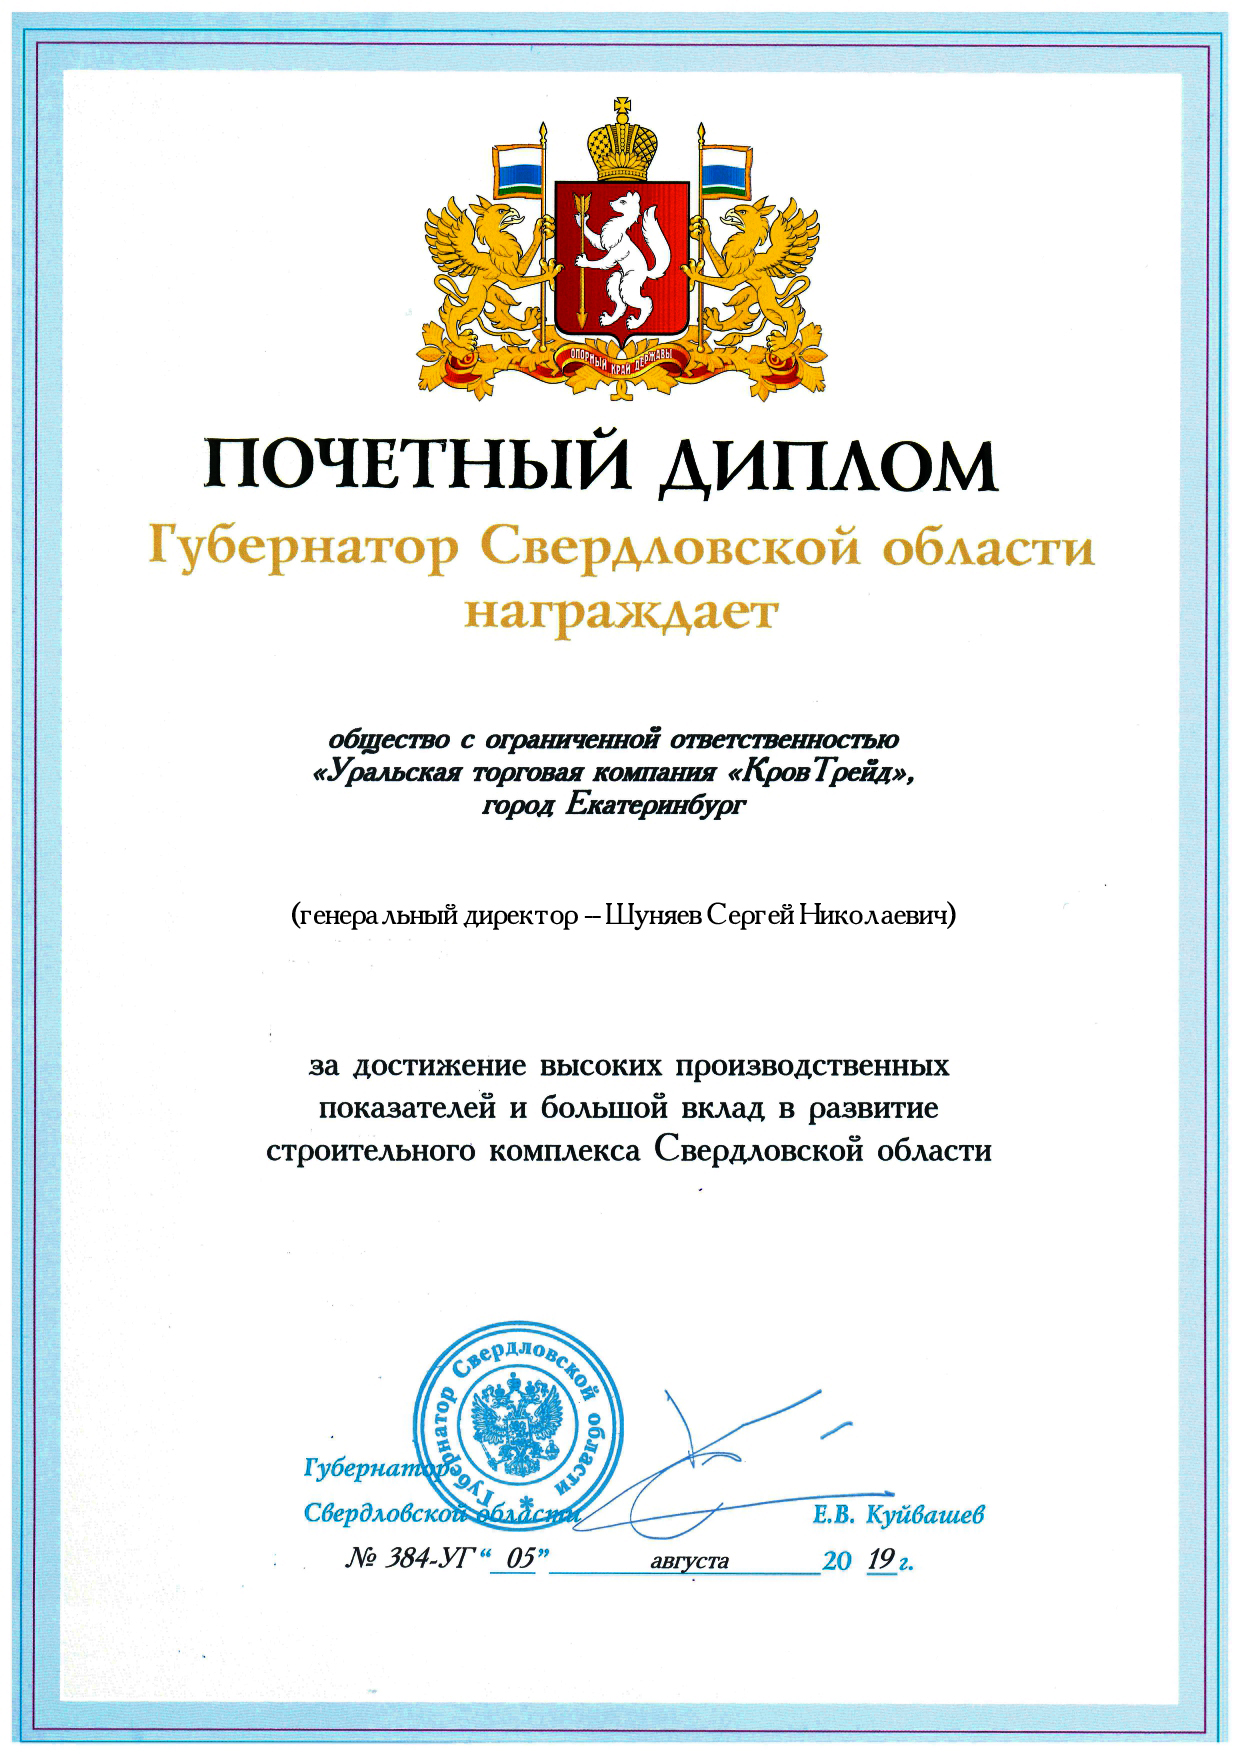 Почетный диплом Губернатора Св. обл.jpg